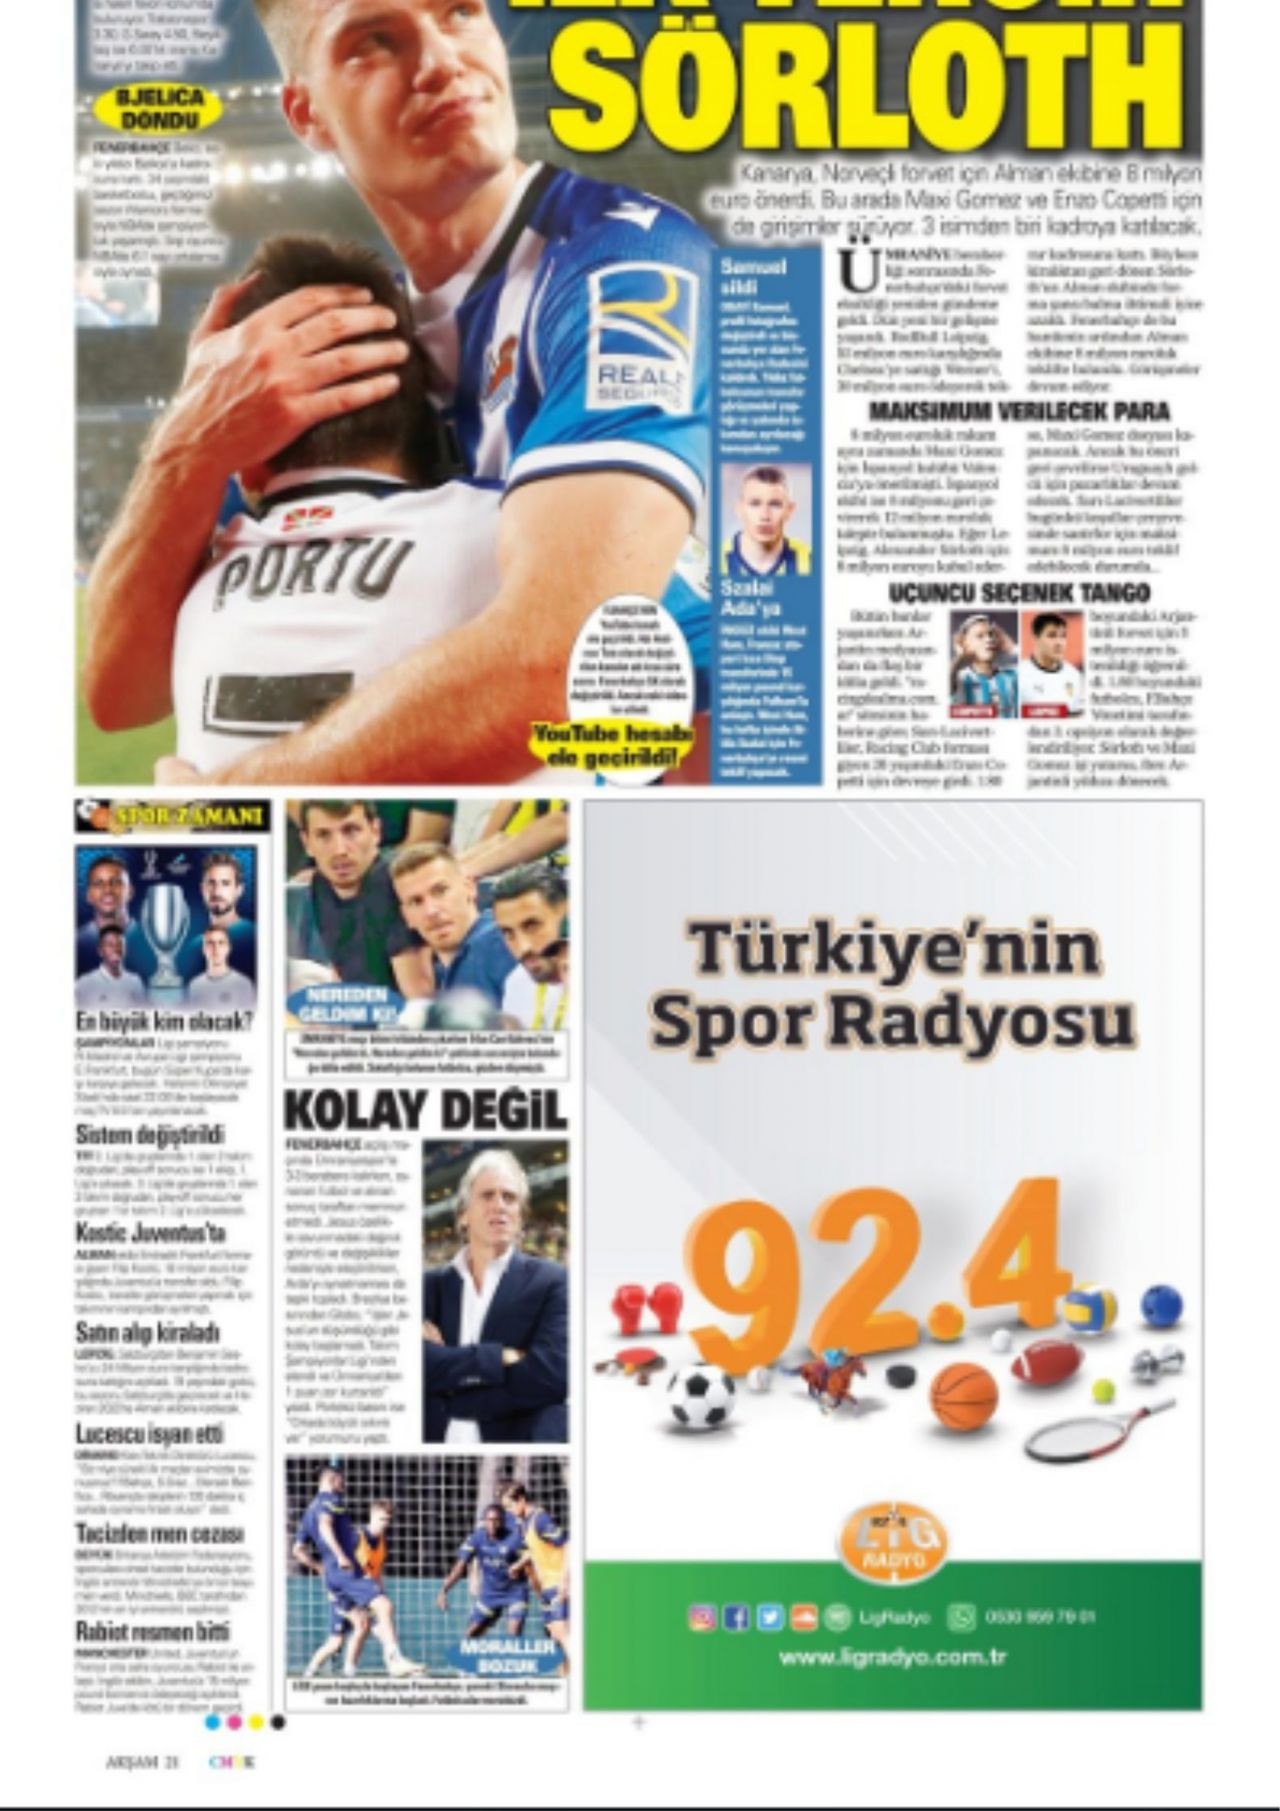 10 Ağustos 2022 Günün gazetelerdeki spor manşetleri - Sayfa 2